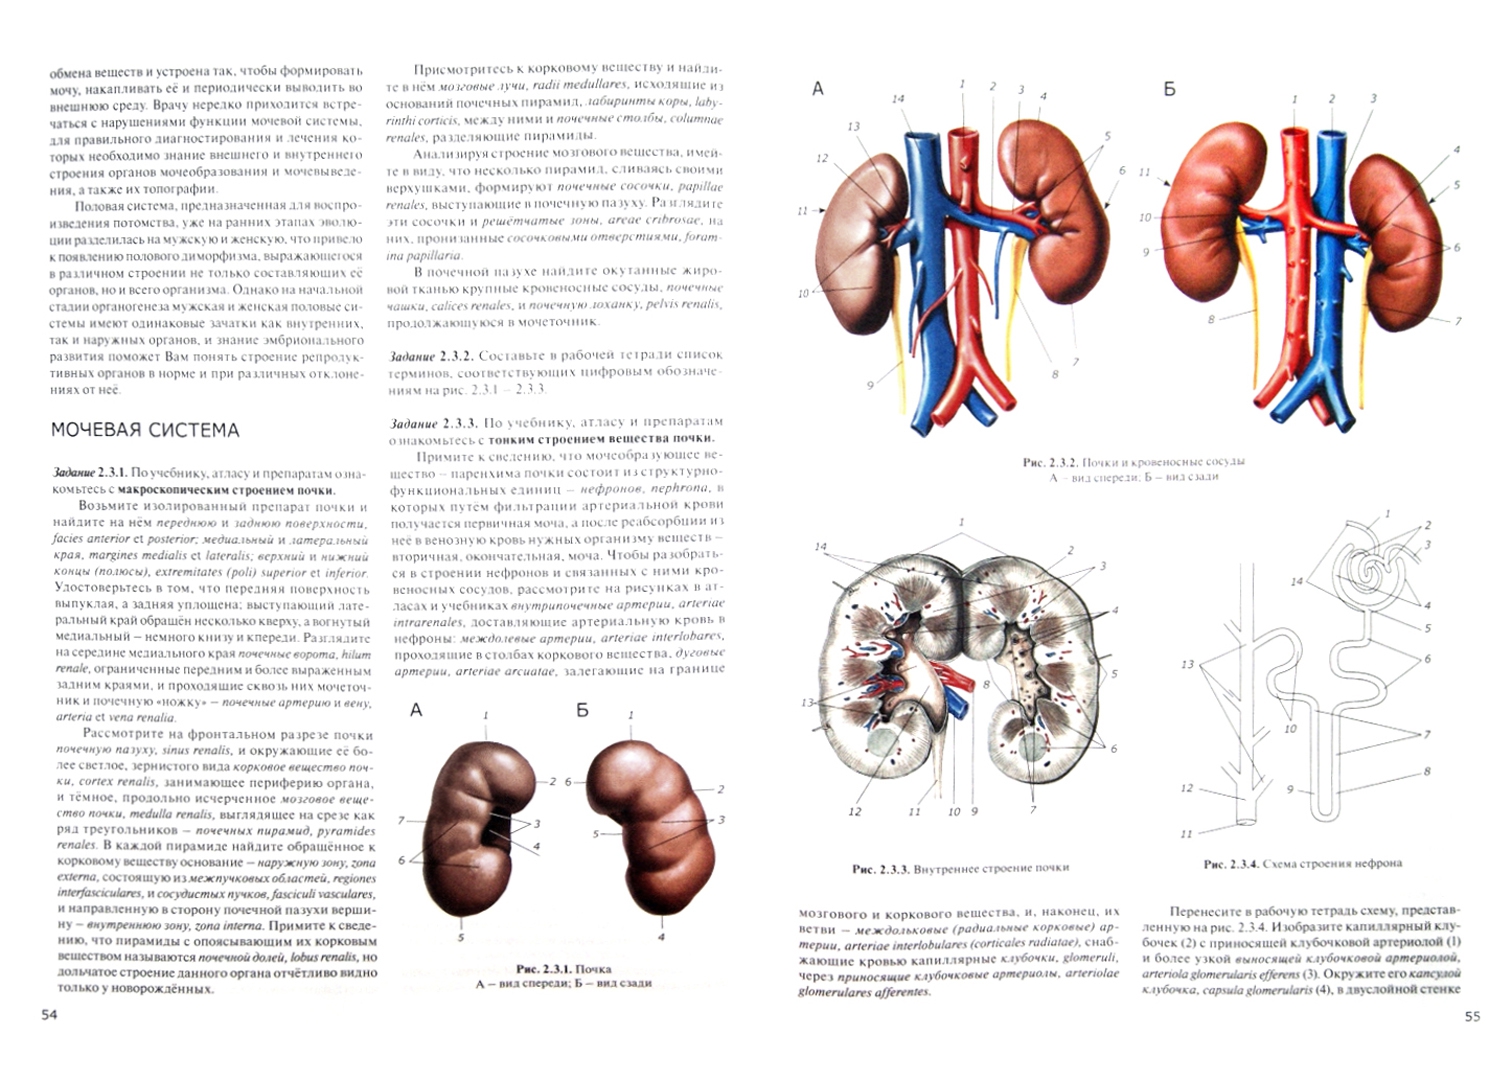 Иллюстрация 1 из 6 для Практикум по анатомии человека. В 4-х частях. Часть 2. Внутренности и эндокринные железы - Цыбулькин, Горская, Колесников | Лабиринт - книги. Источник: Лабиринт